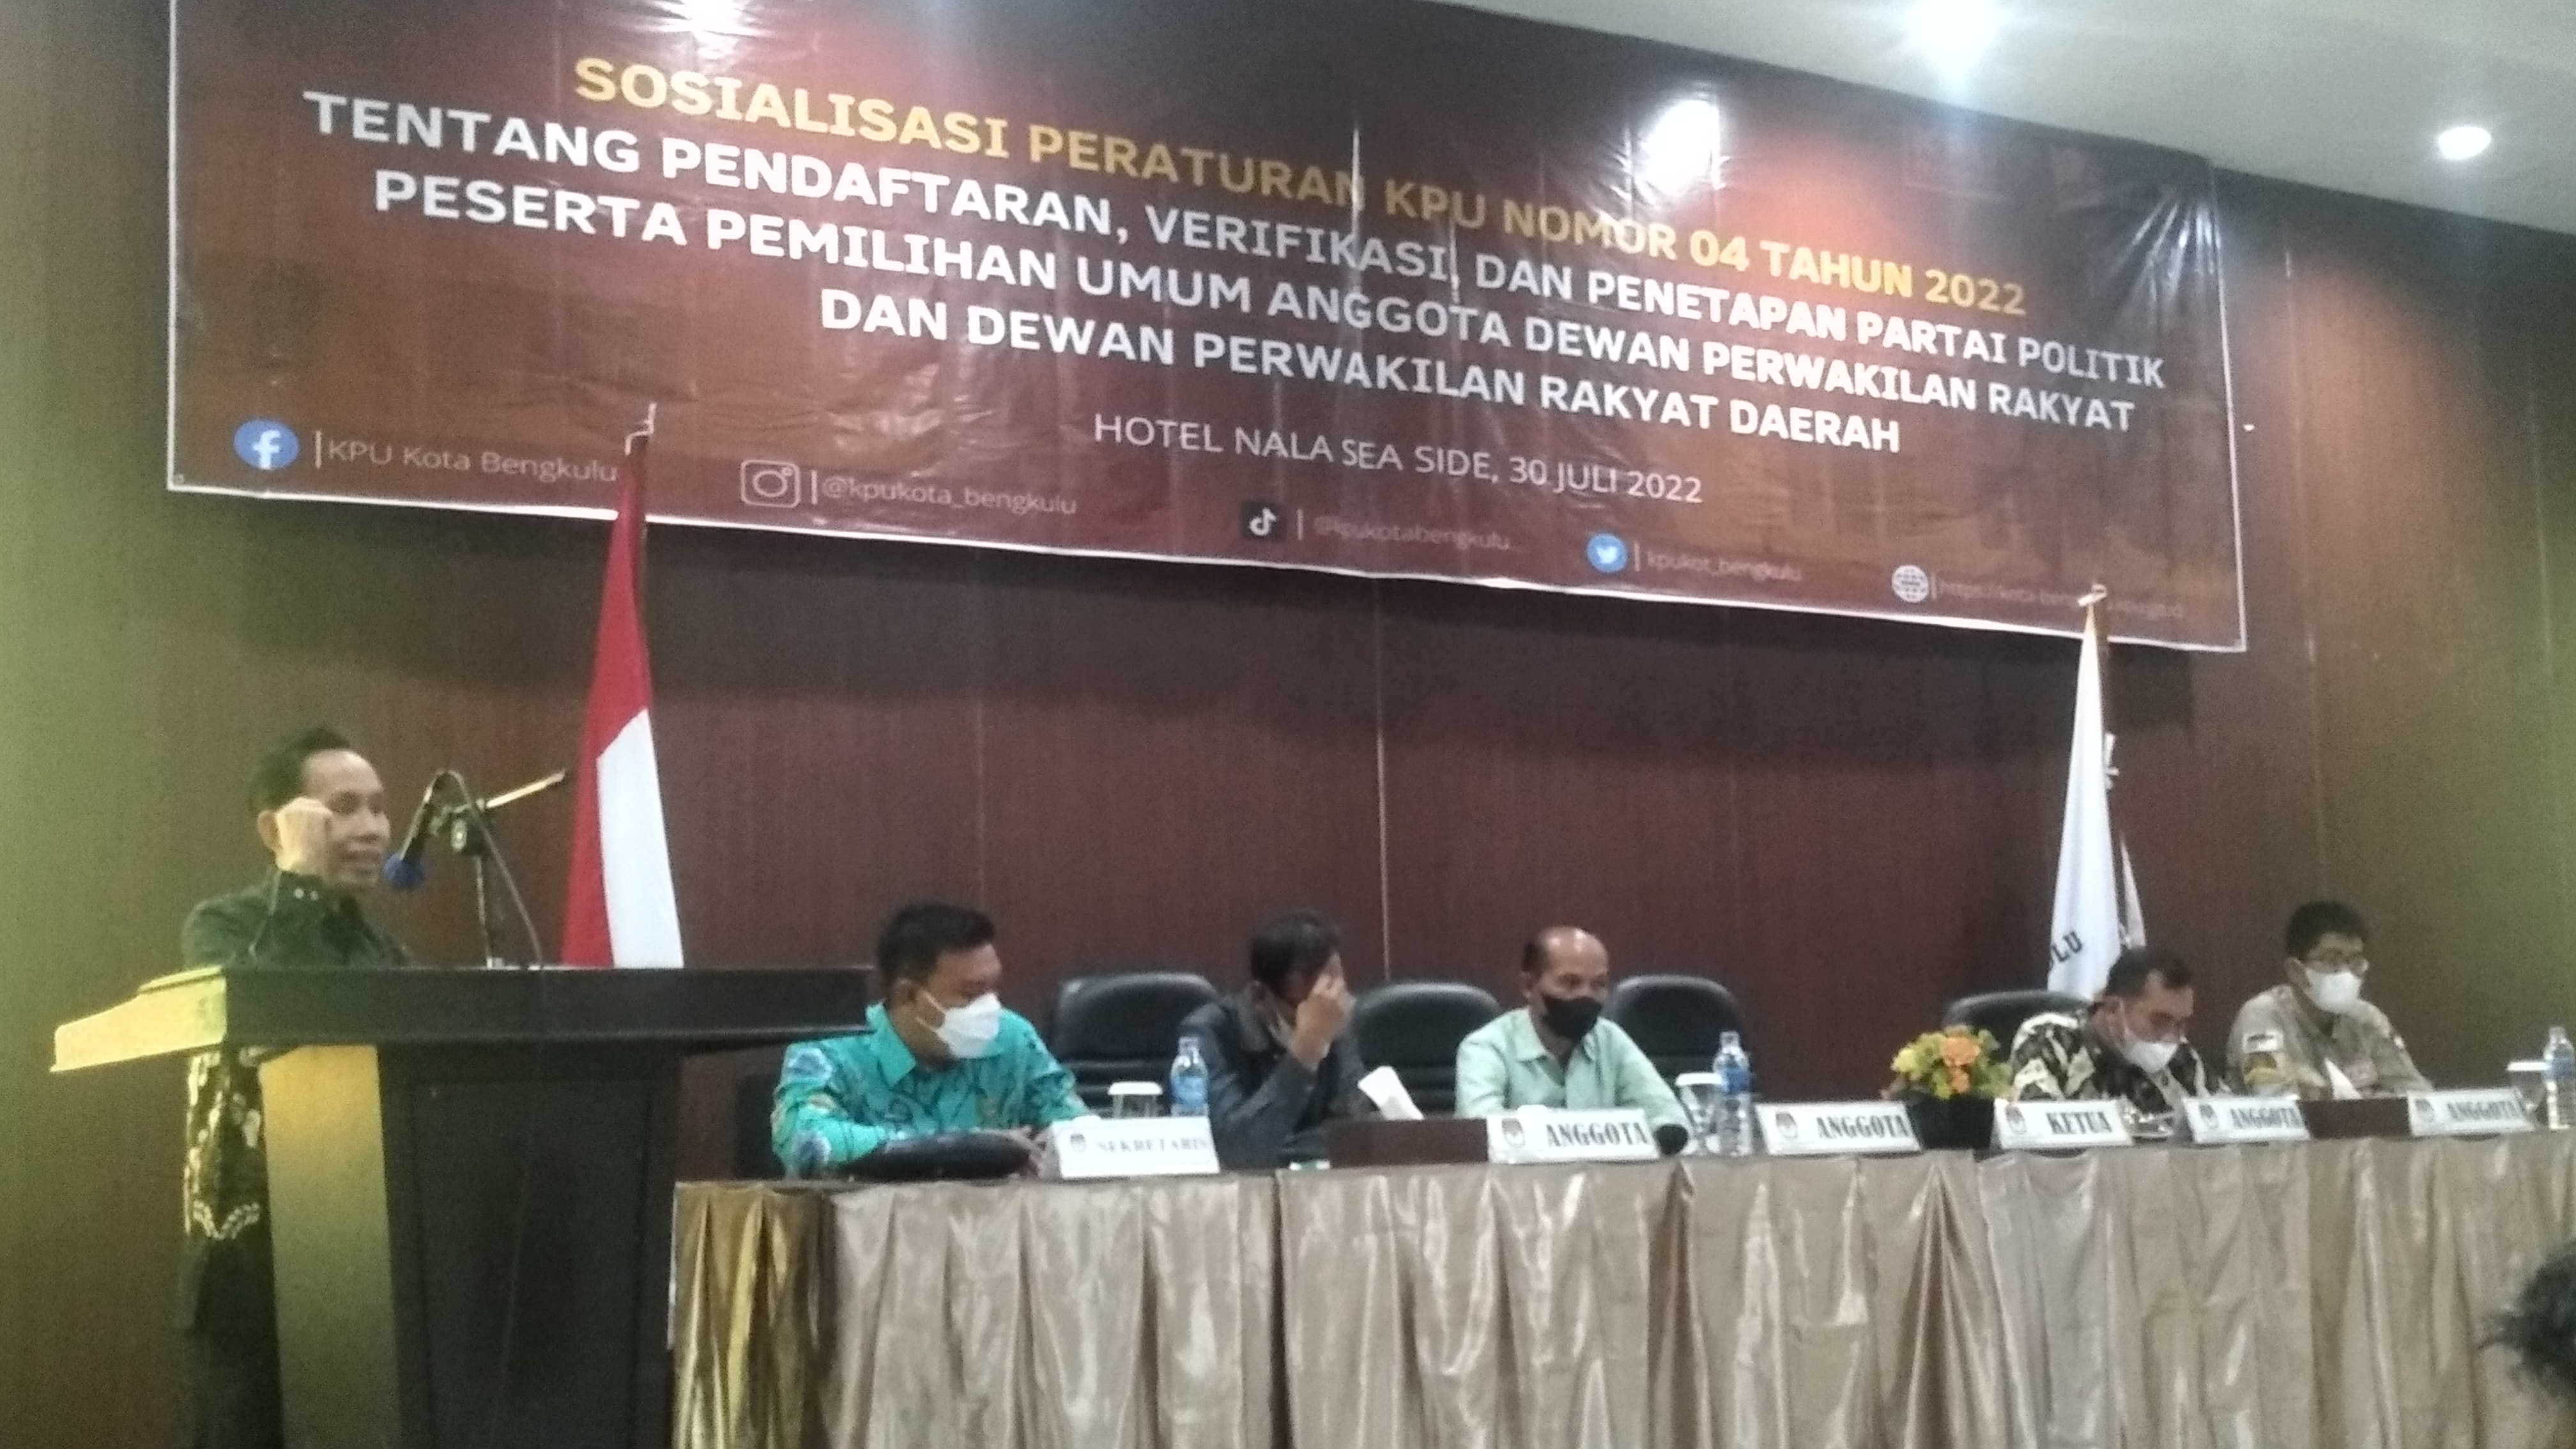 KPU Kota Bengkulu Sosialisasikan PKPU Nomor 4 Tahun 2022